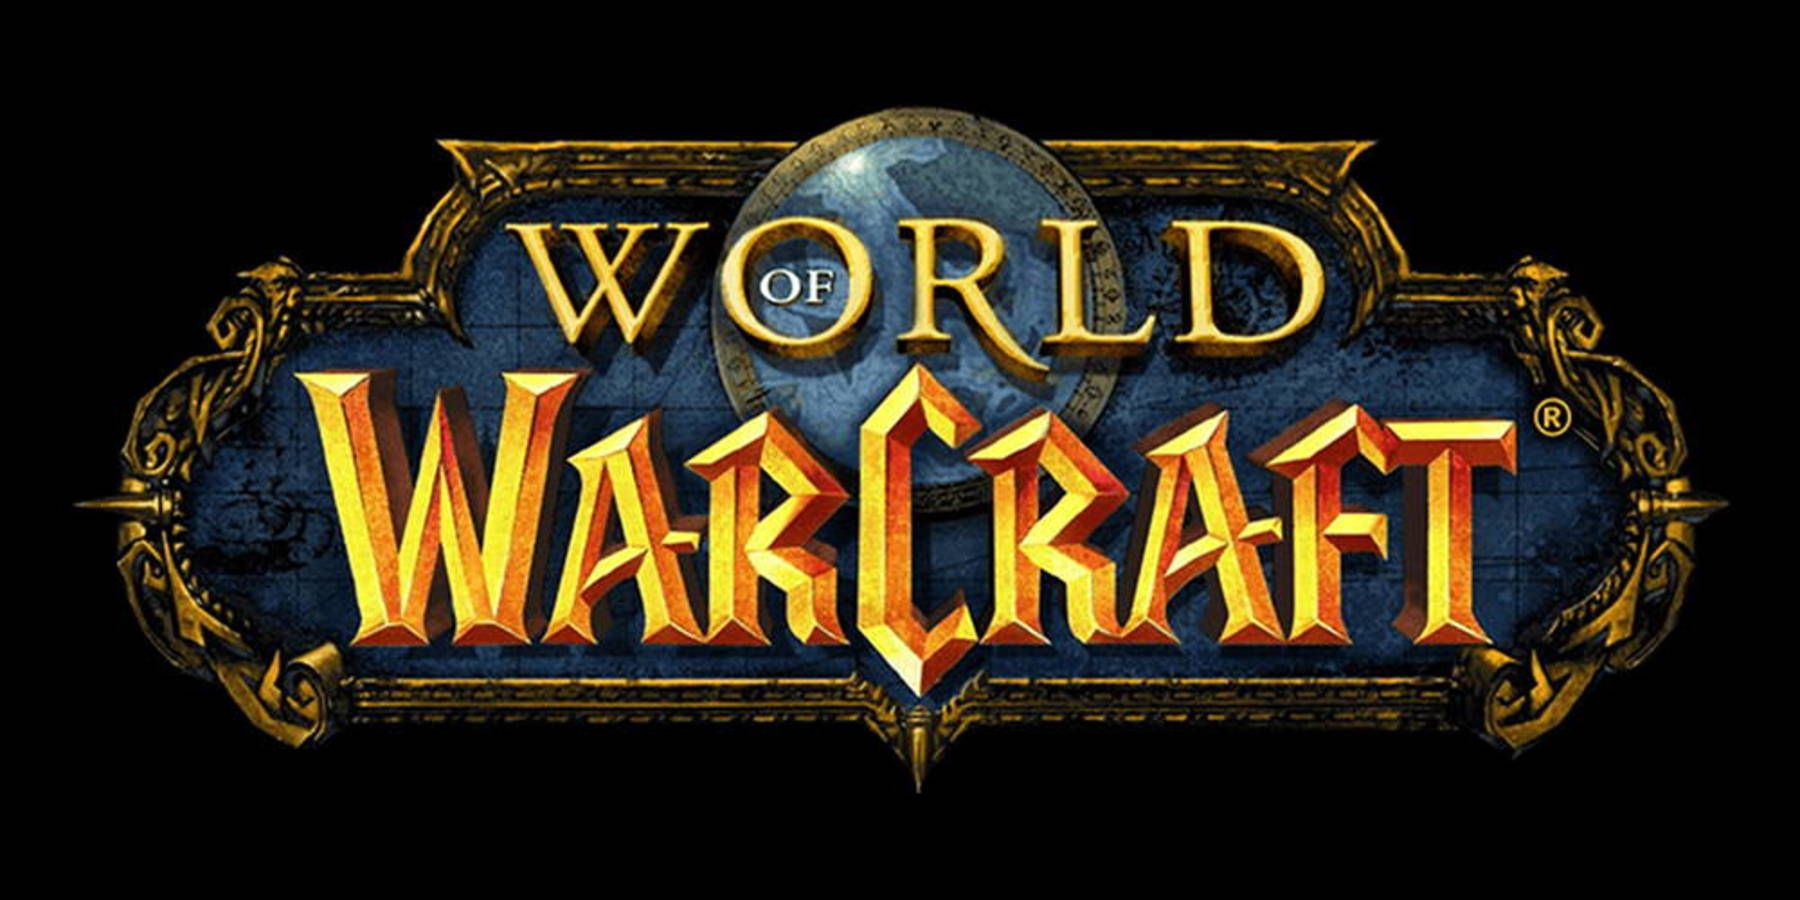 Warcraft Mobile Game Naar verluidt geannuleerd